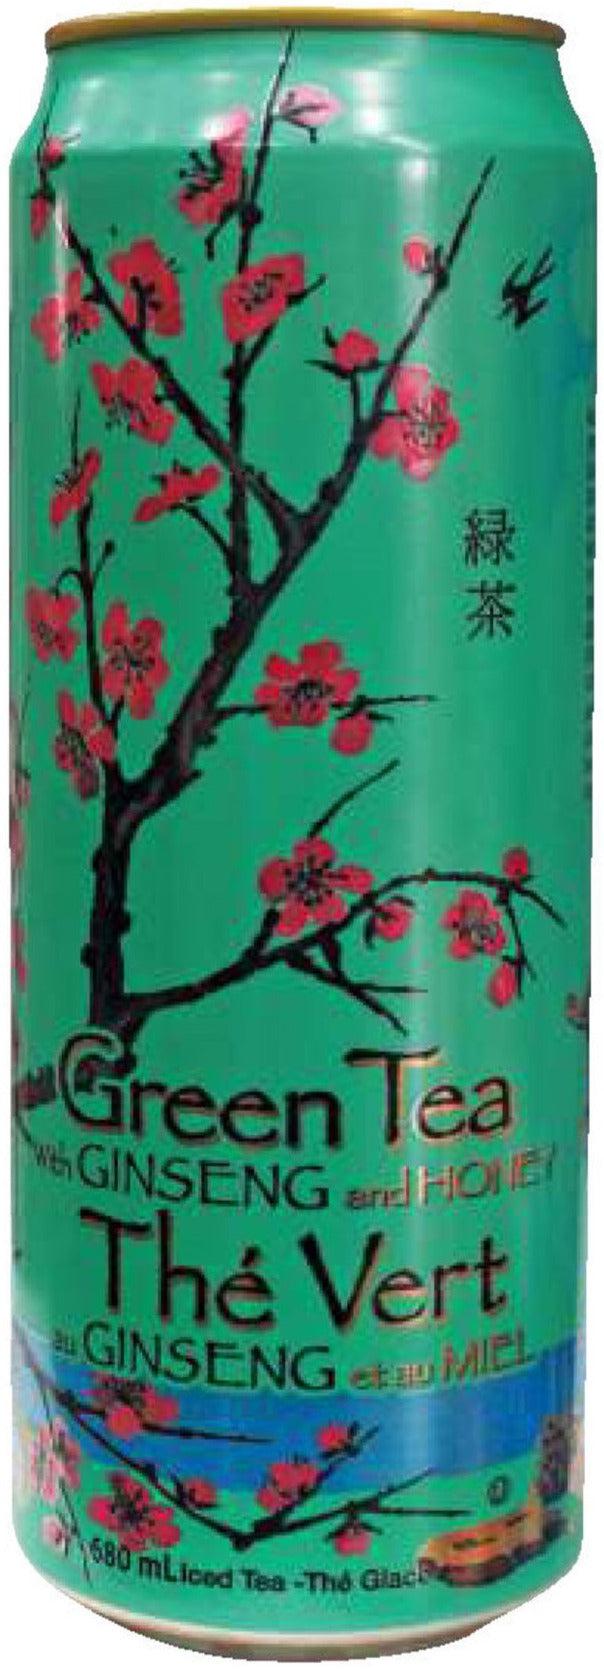 Arizona - Iced Tea - Green Tea - Cans